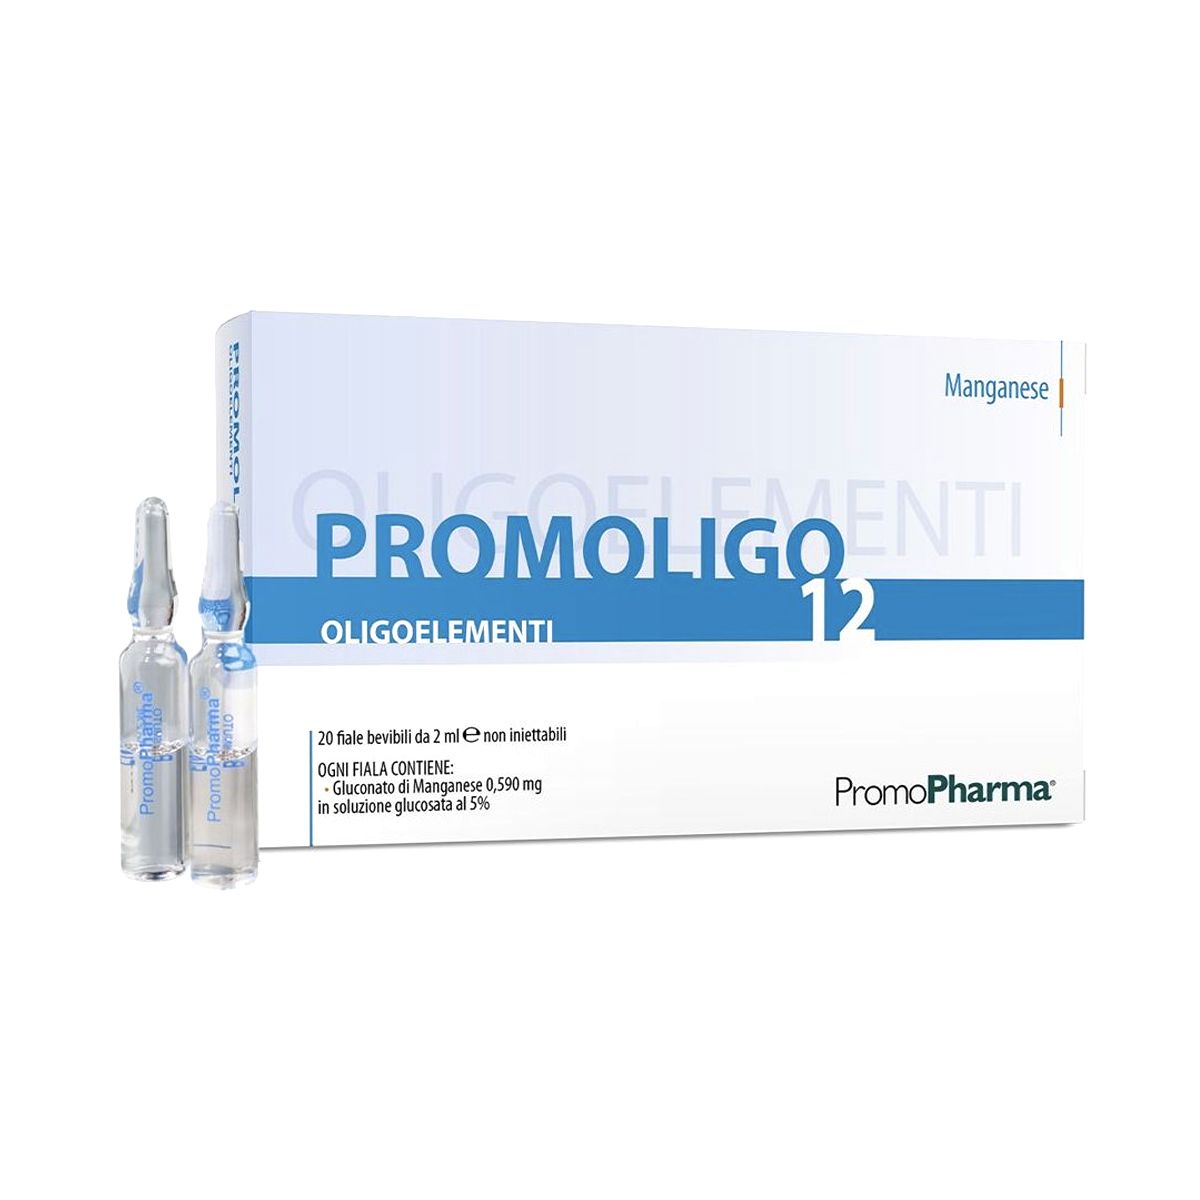 Promopharma Promoligo 12 Manganese 20 Fiale 2ml